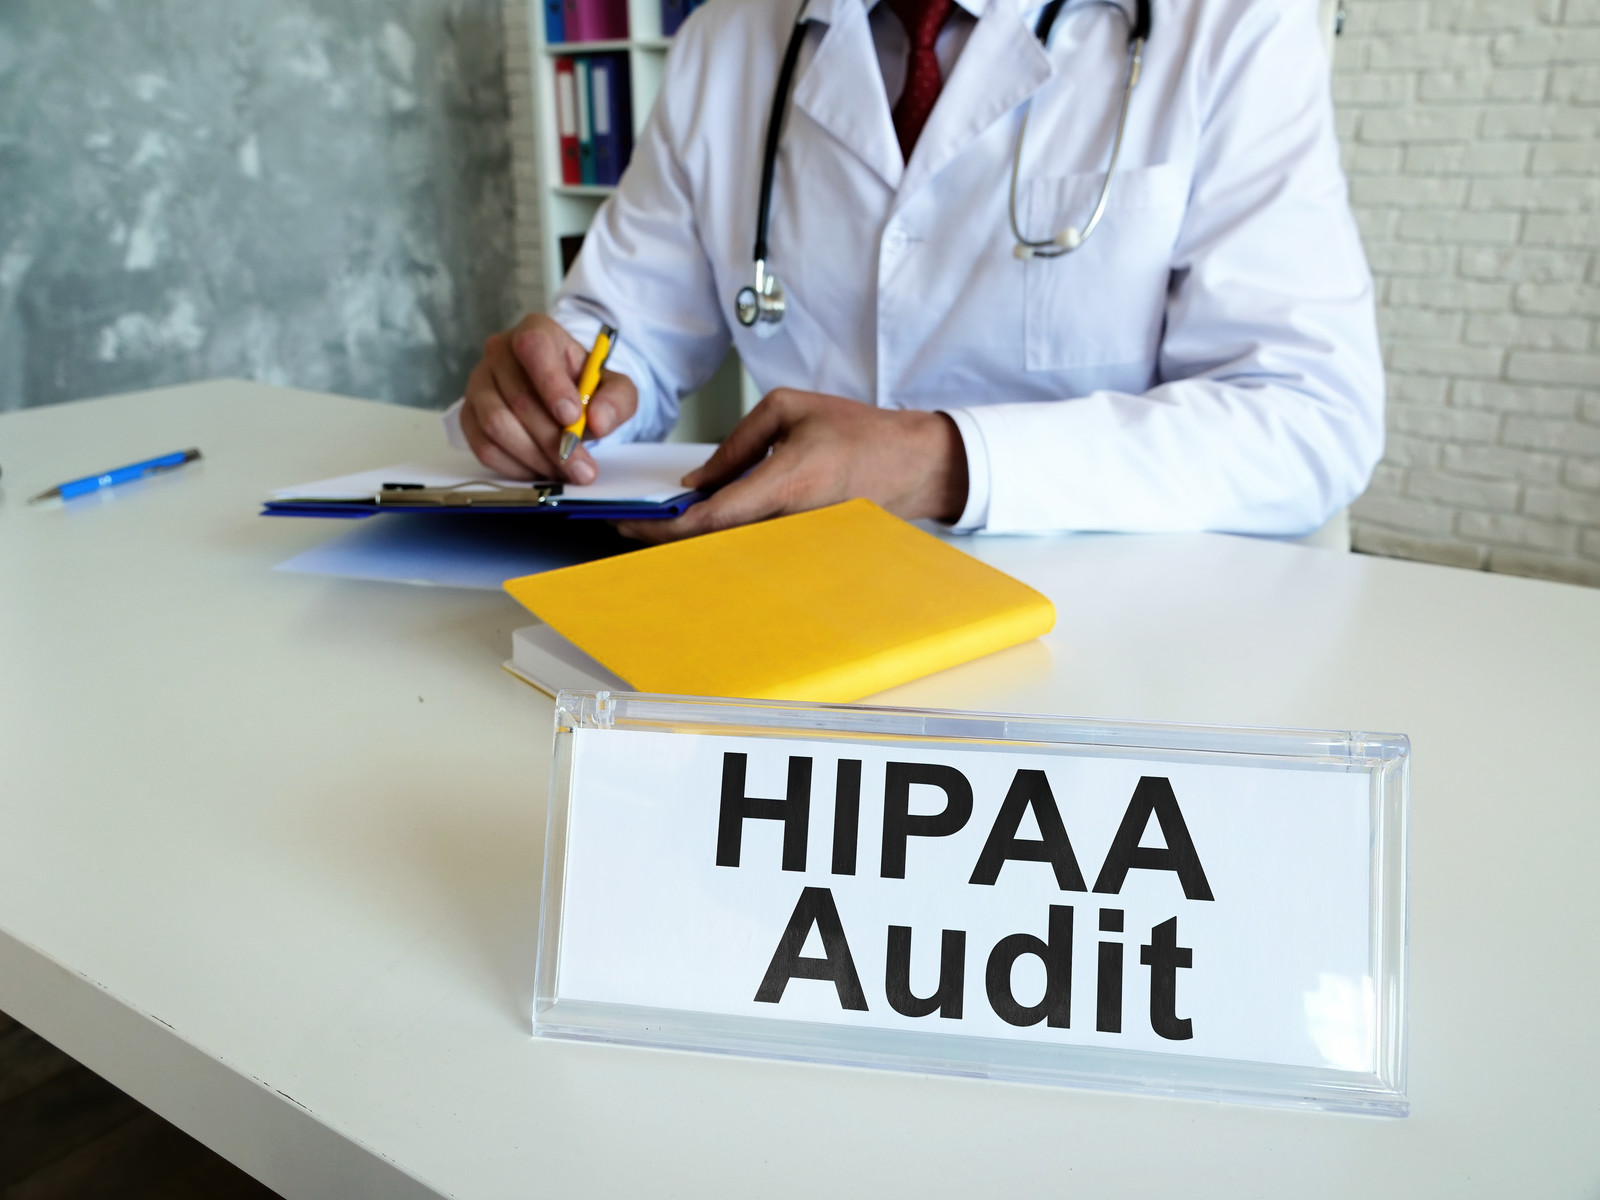 2023 HIPAA Audits and Penalties may Increase